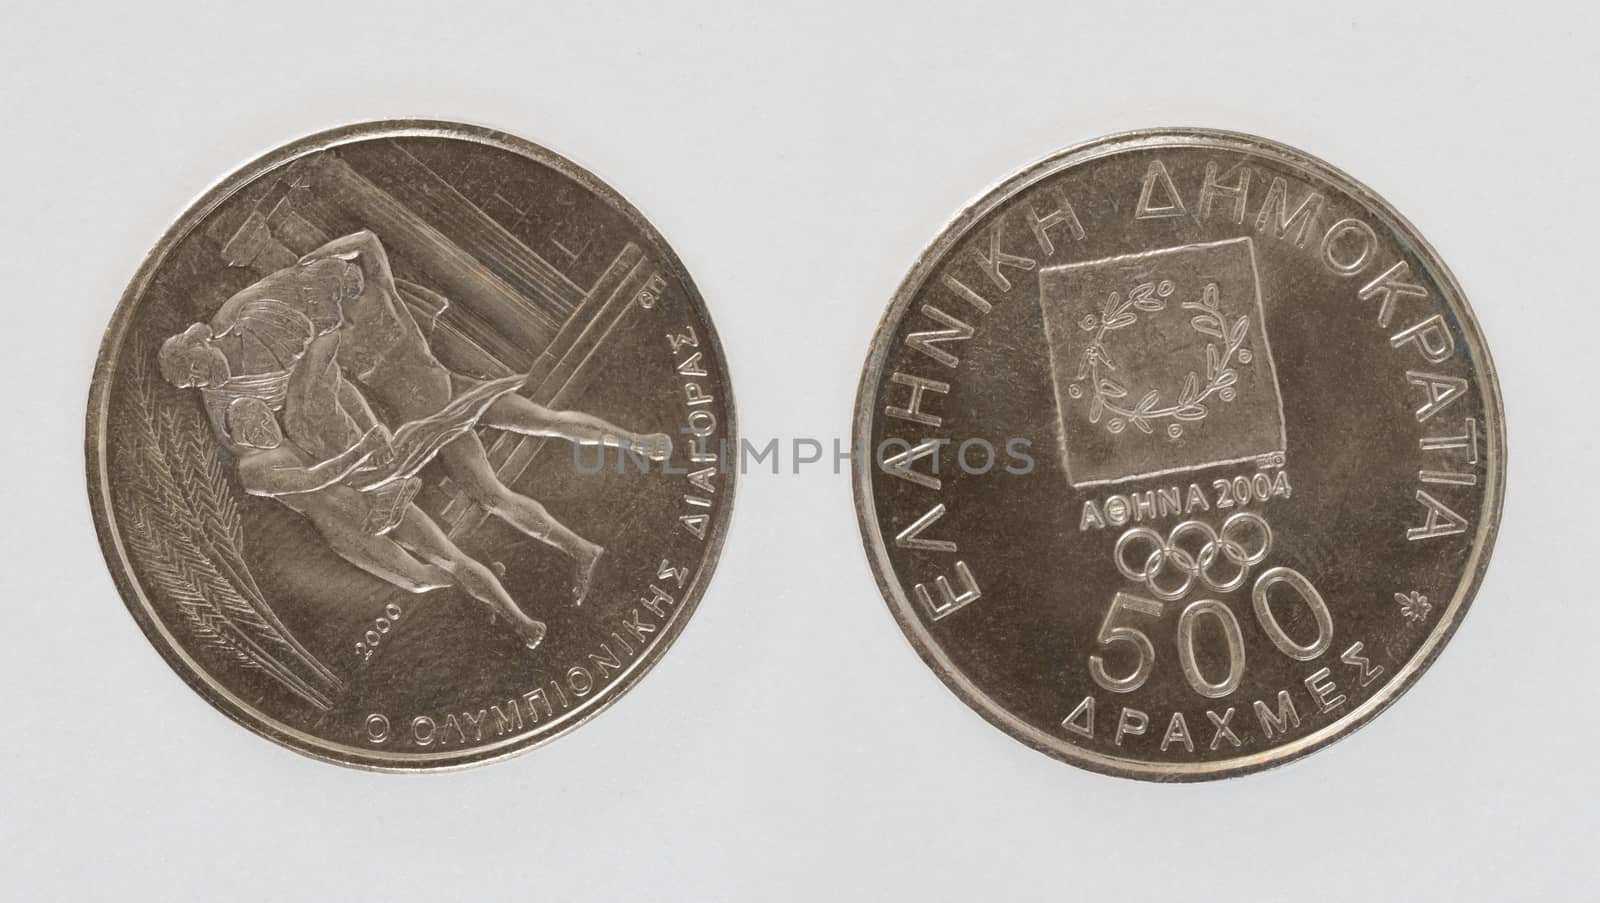 Greek dirham coin by Vectorex